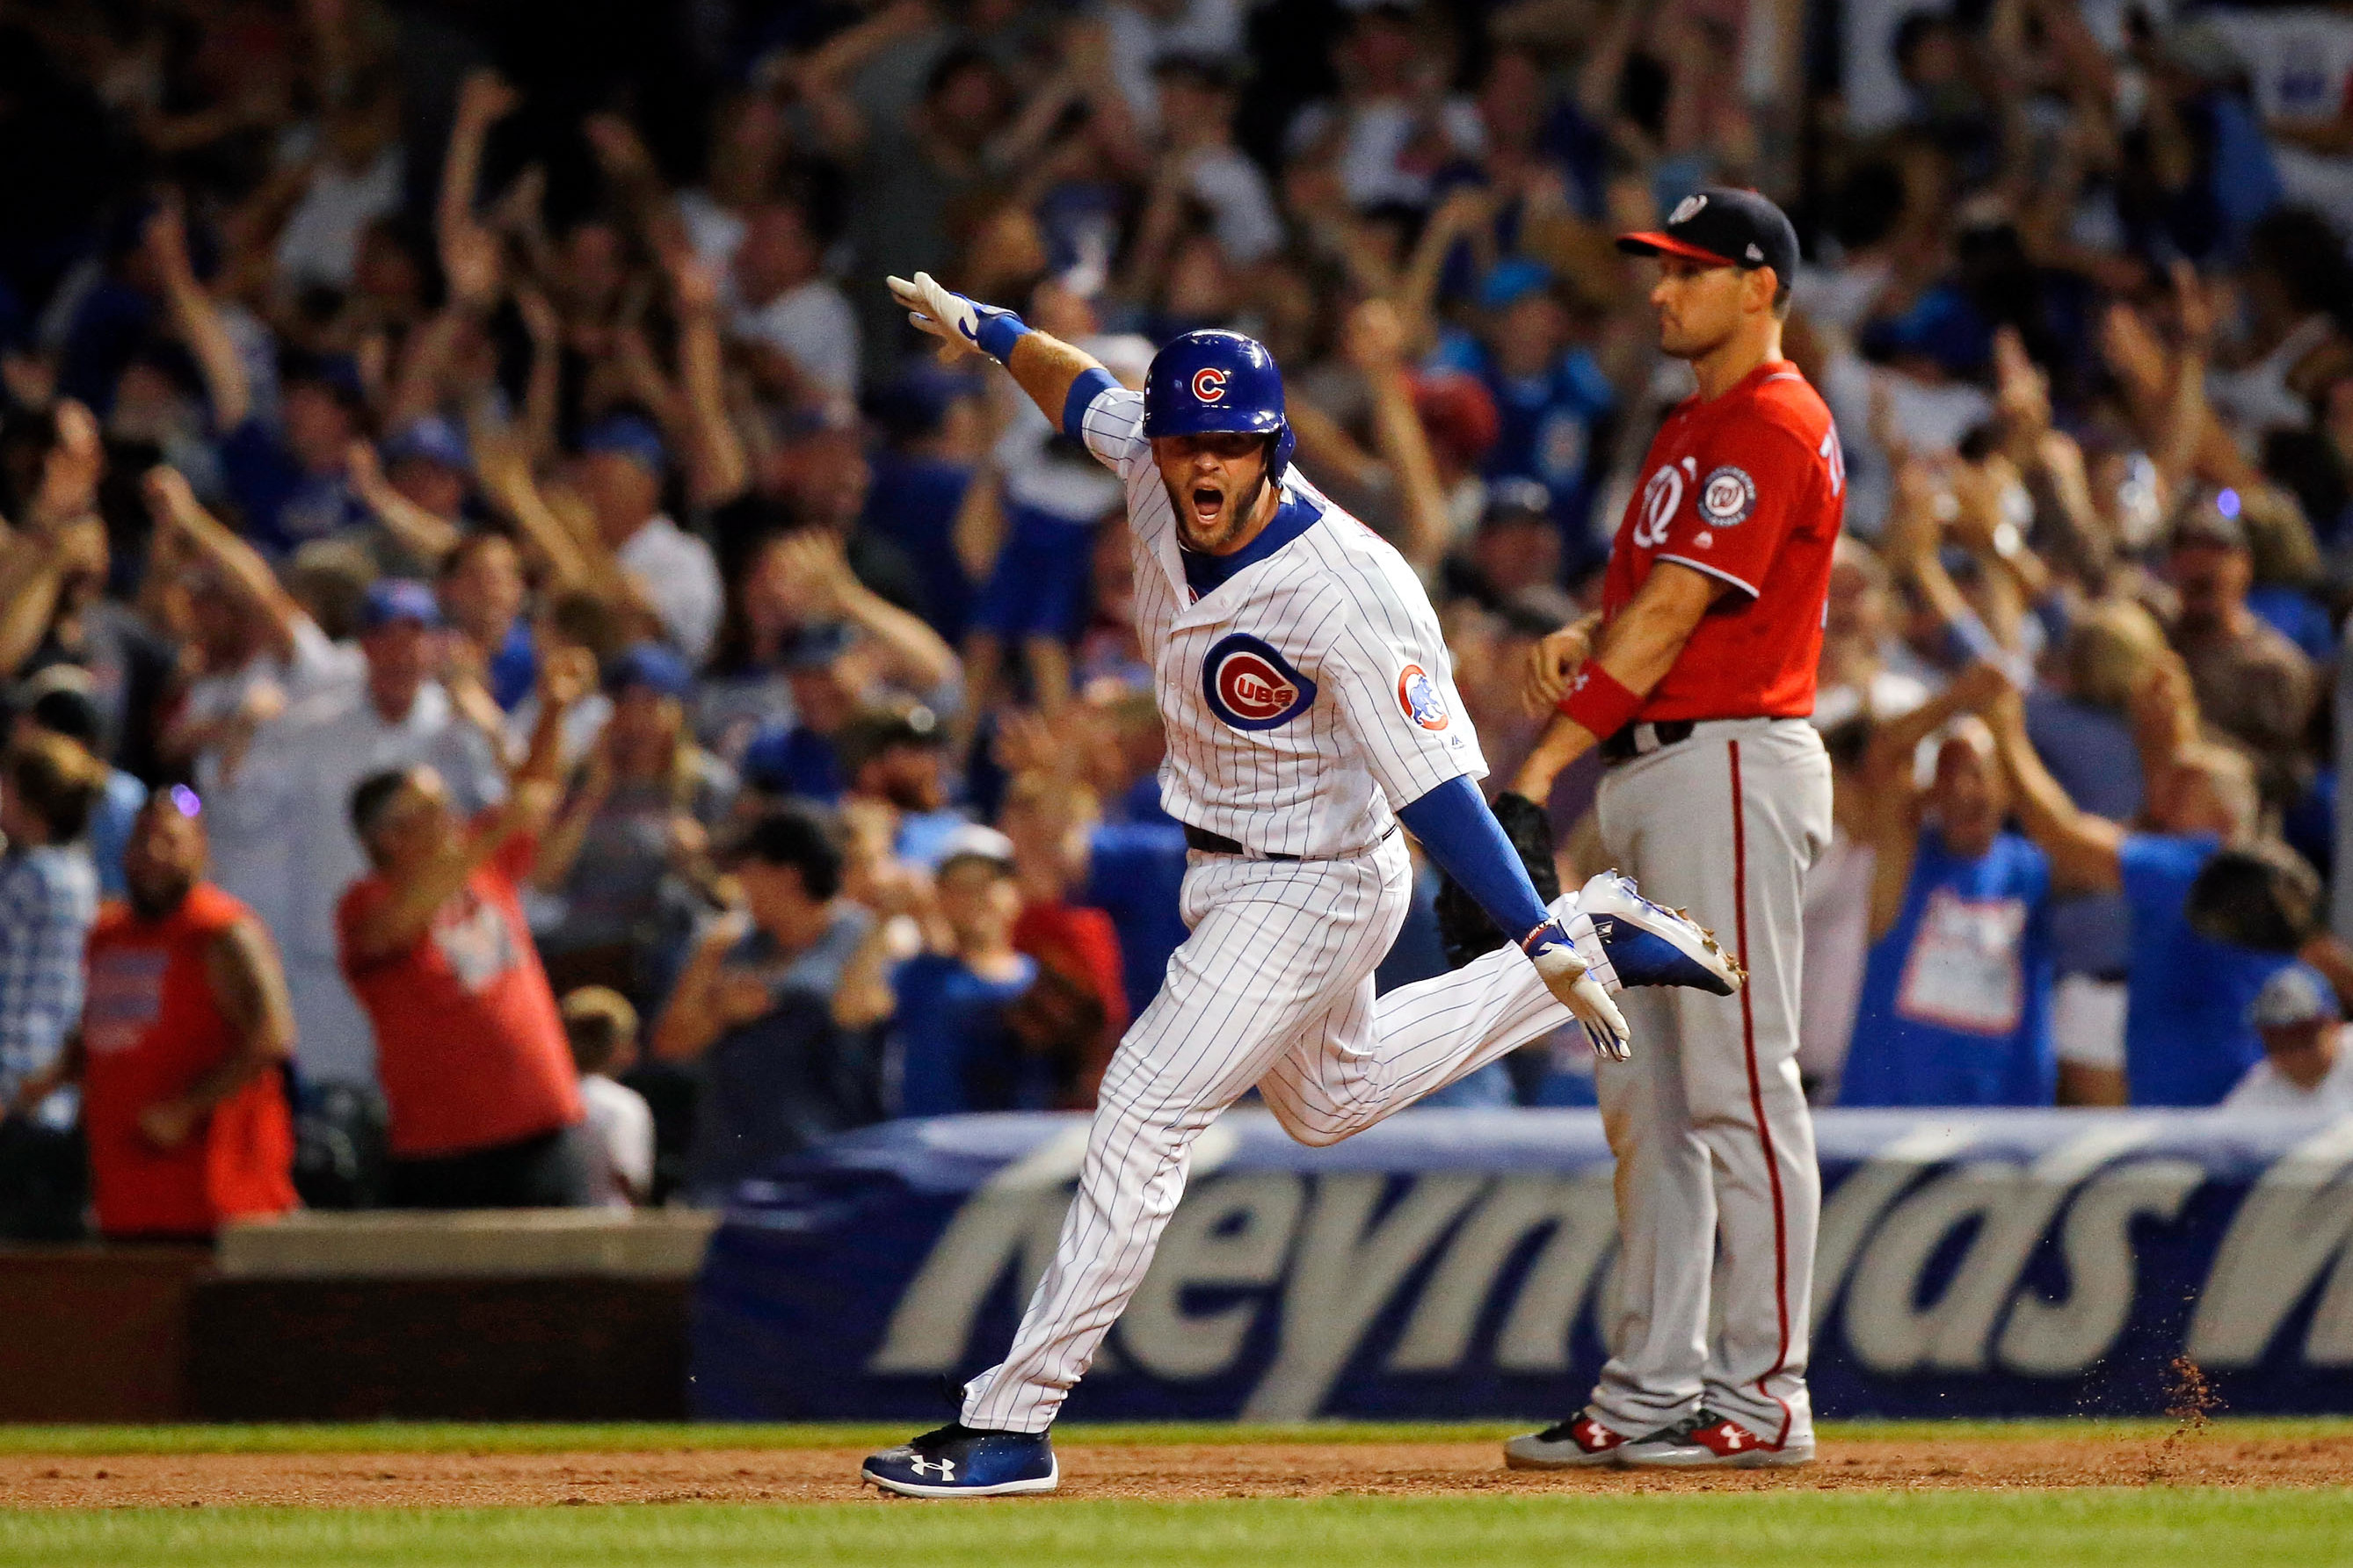 Chicago Cubs: Báez walk-off home run beats Nationals in 13